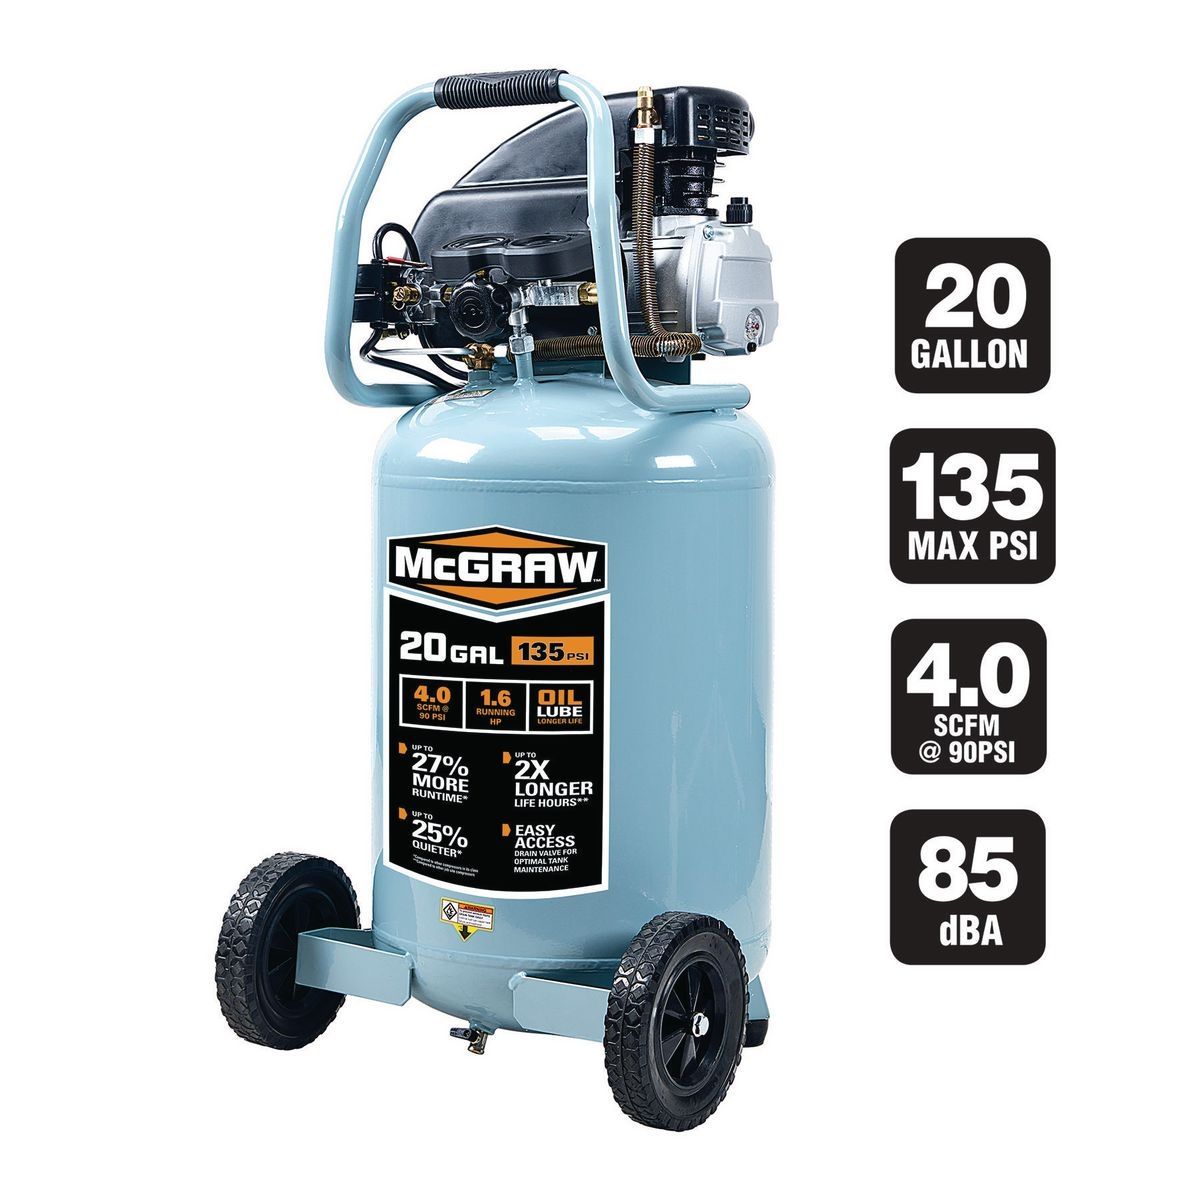 MCGRAW 20 gallon 1.6 HP 135 PSI Oil-lube Vertical Air Compressor